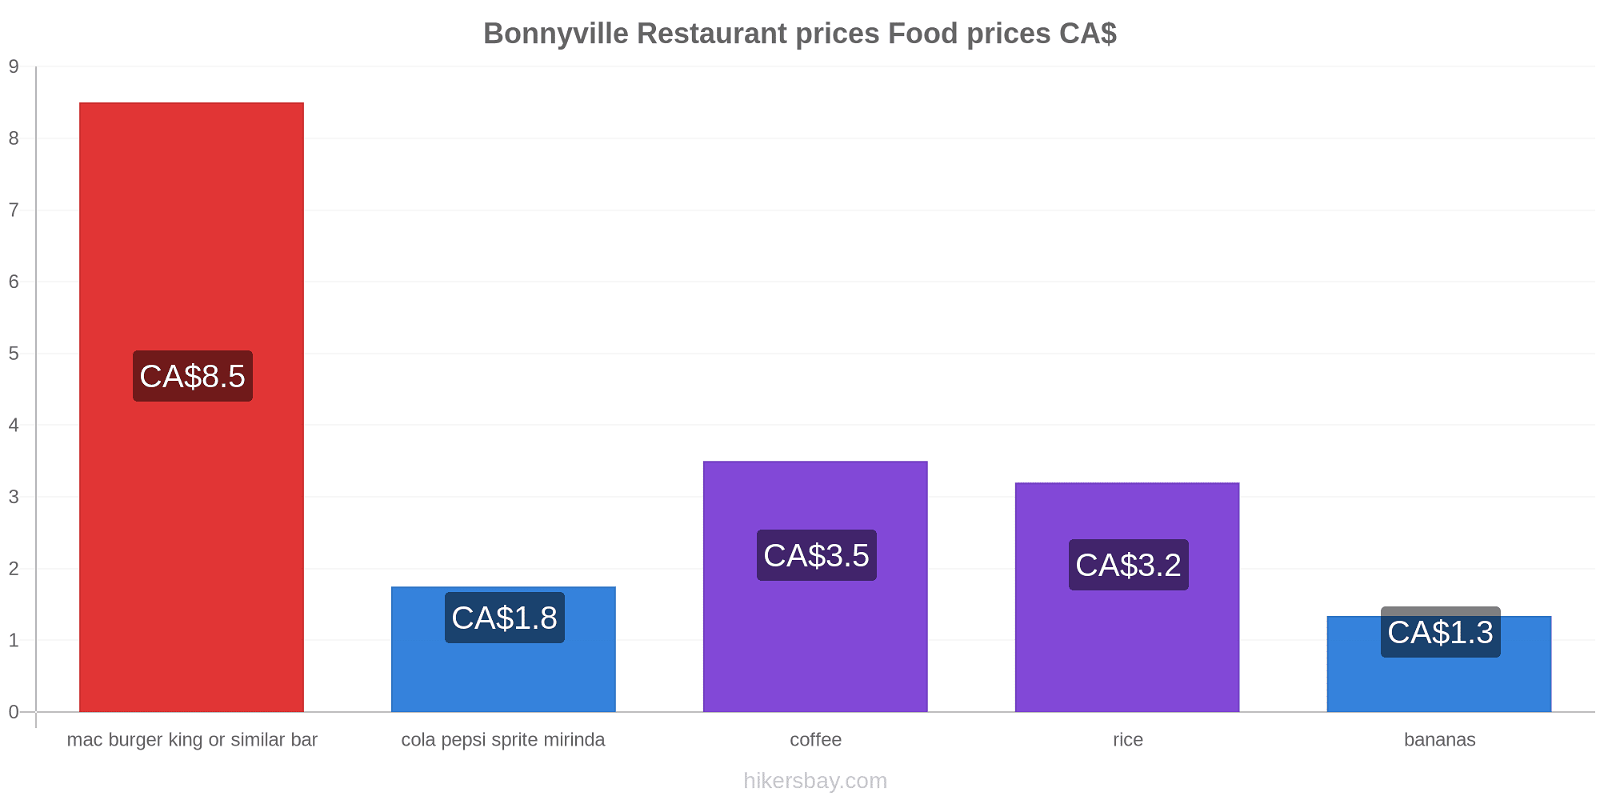 Bonnyville price changes hikersbay.com